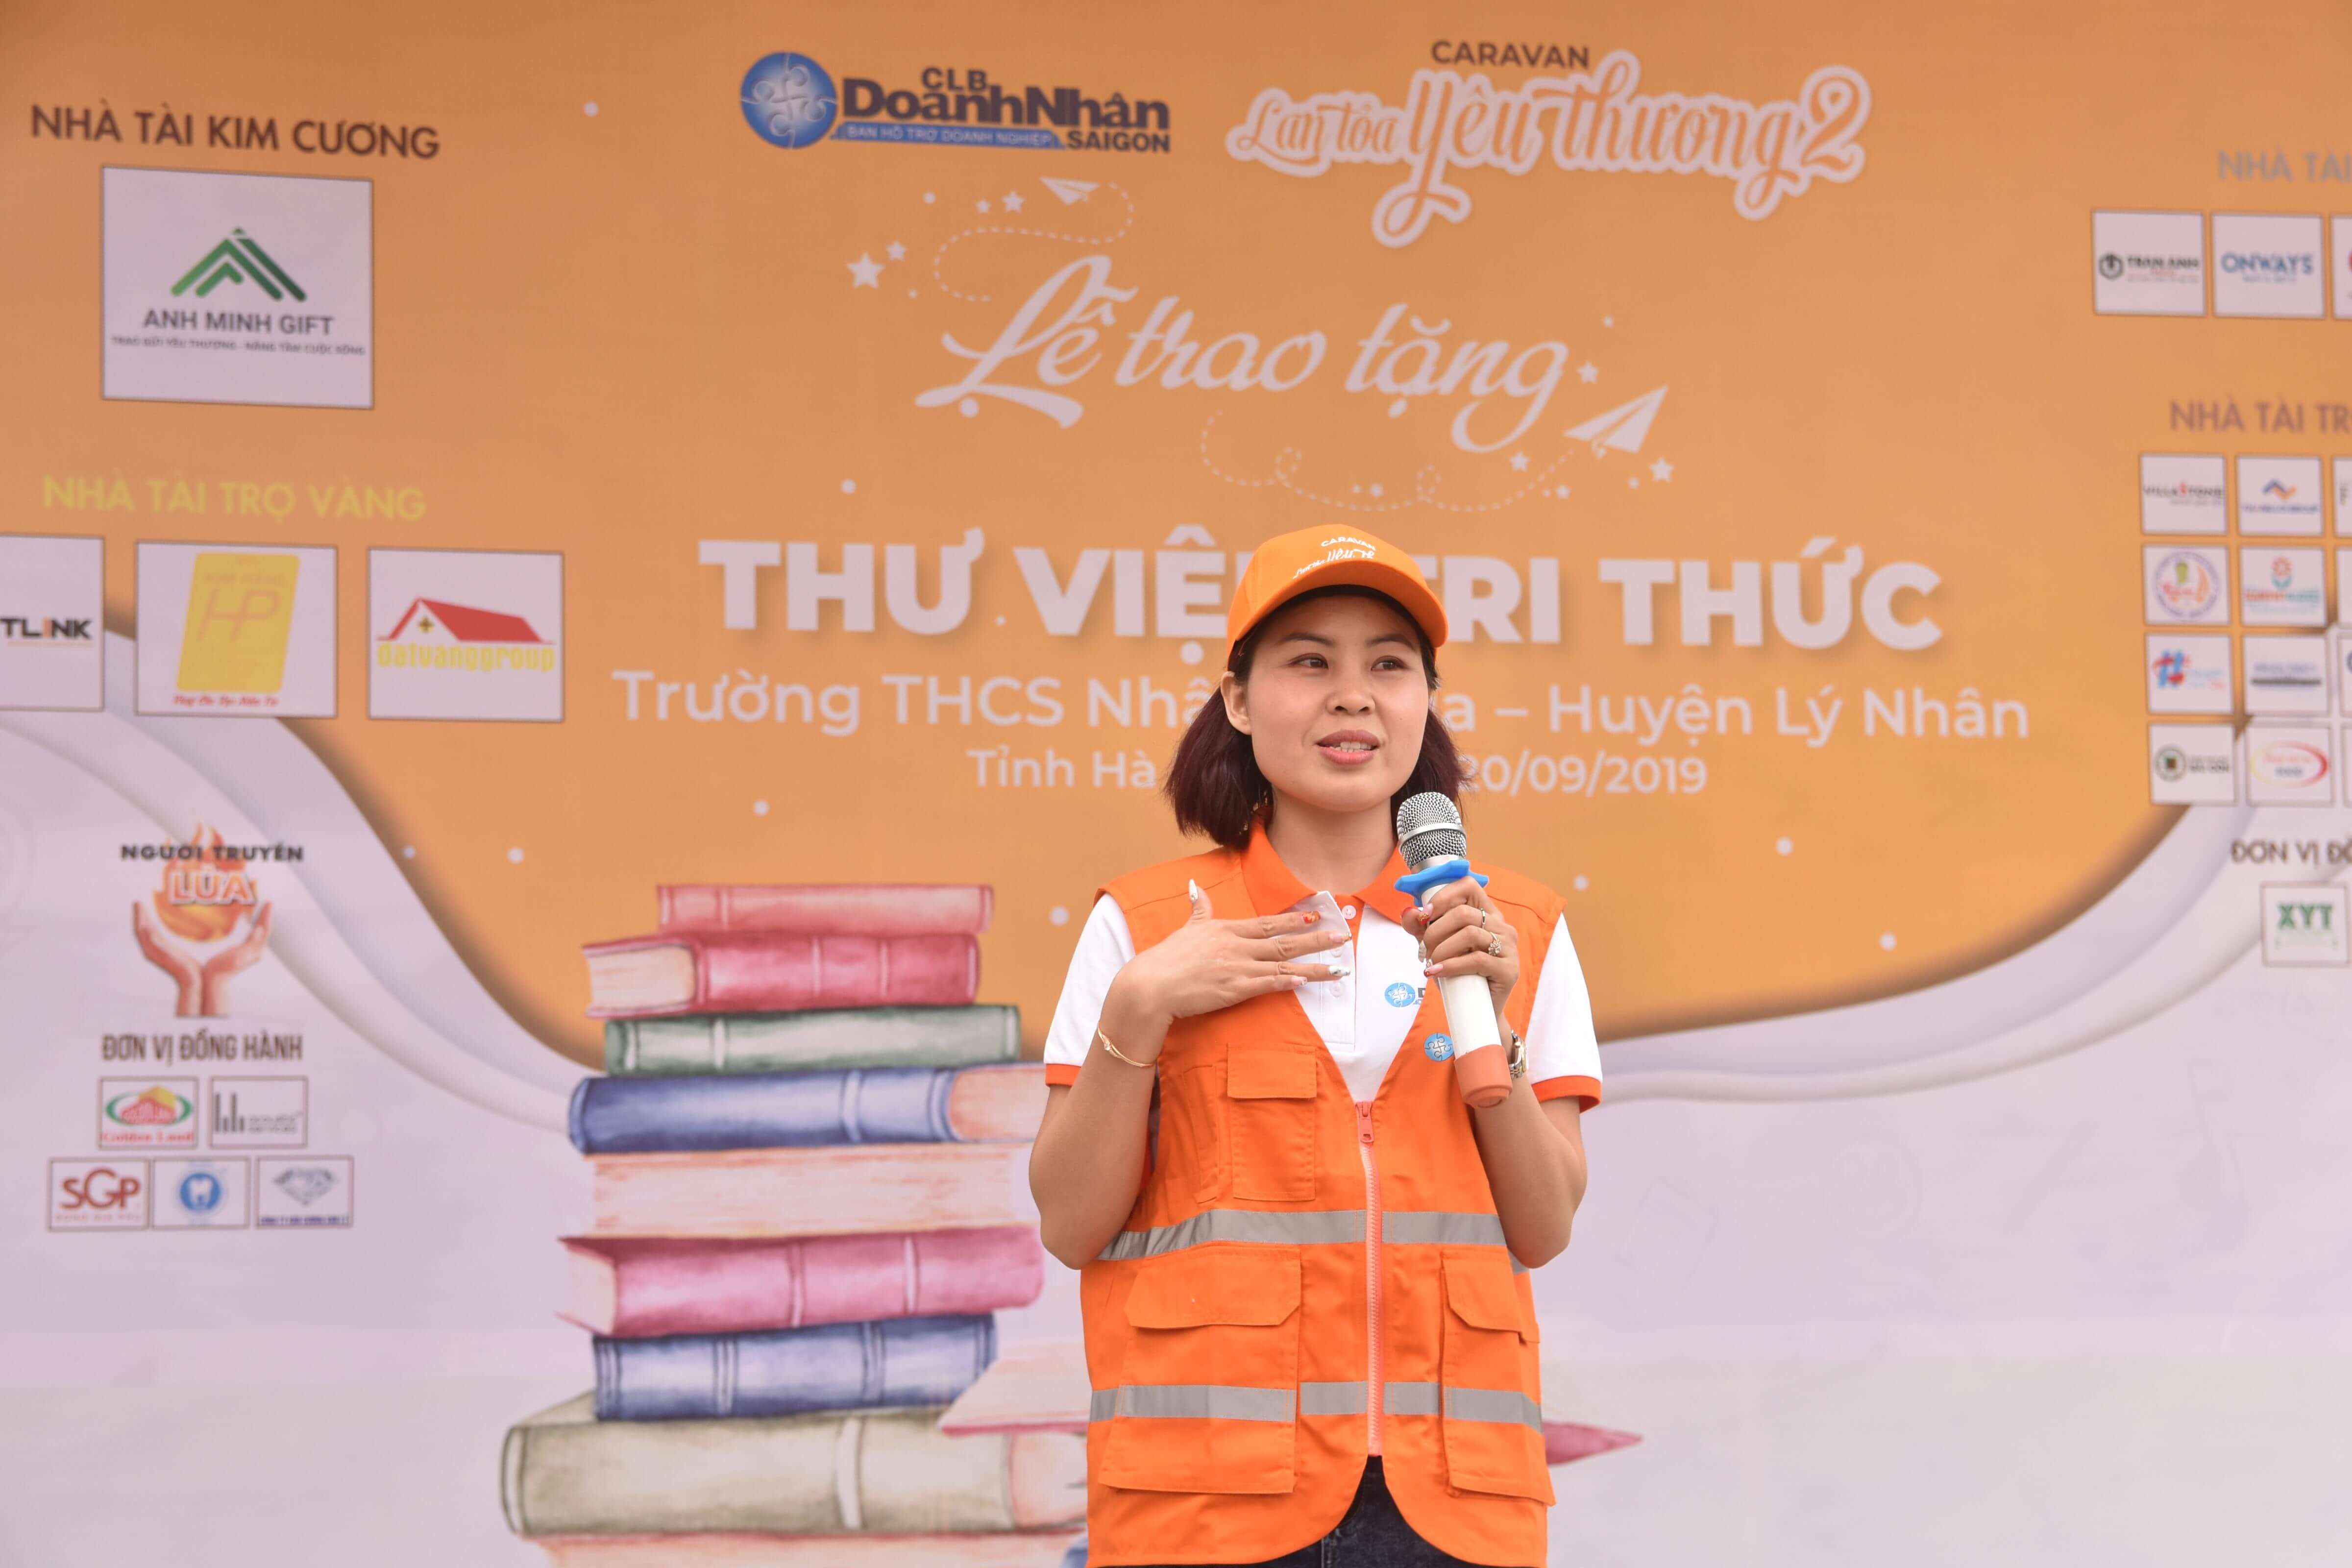 CEO Thanh Mai nhận giấy khen từ Câu lạc bộ Doanh Nhân Sài Gòn